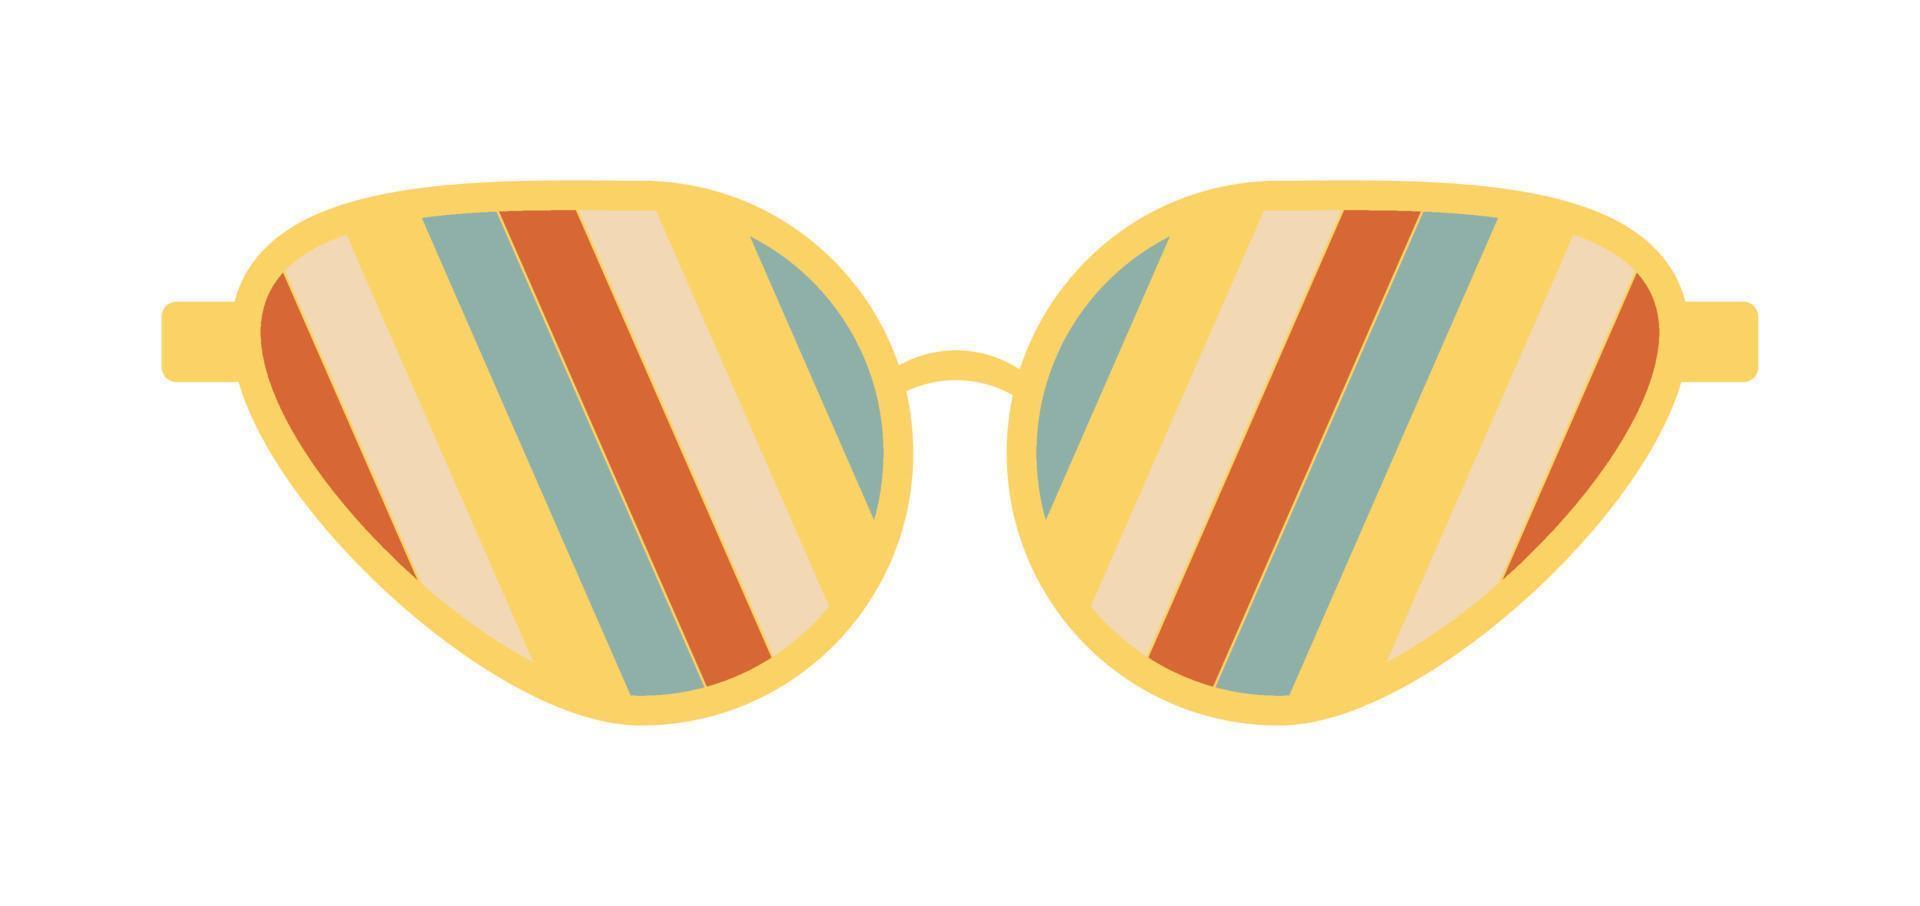 lunettes de soleil psychédéliques dans le style des années 70. éléments graphiques rétro groovy de lunettes avec arc-en-ciel, lignes et vagues. vecteur